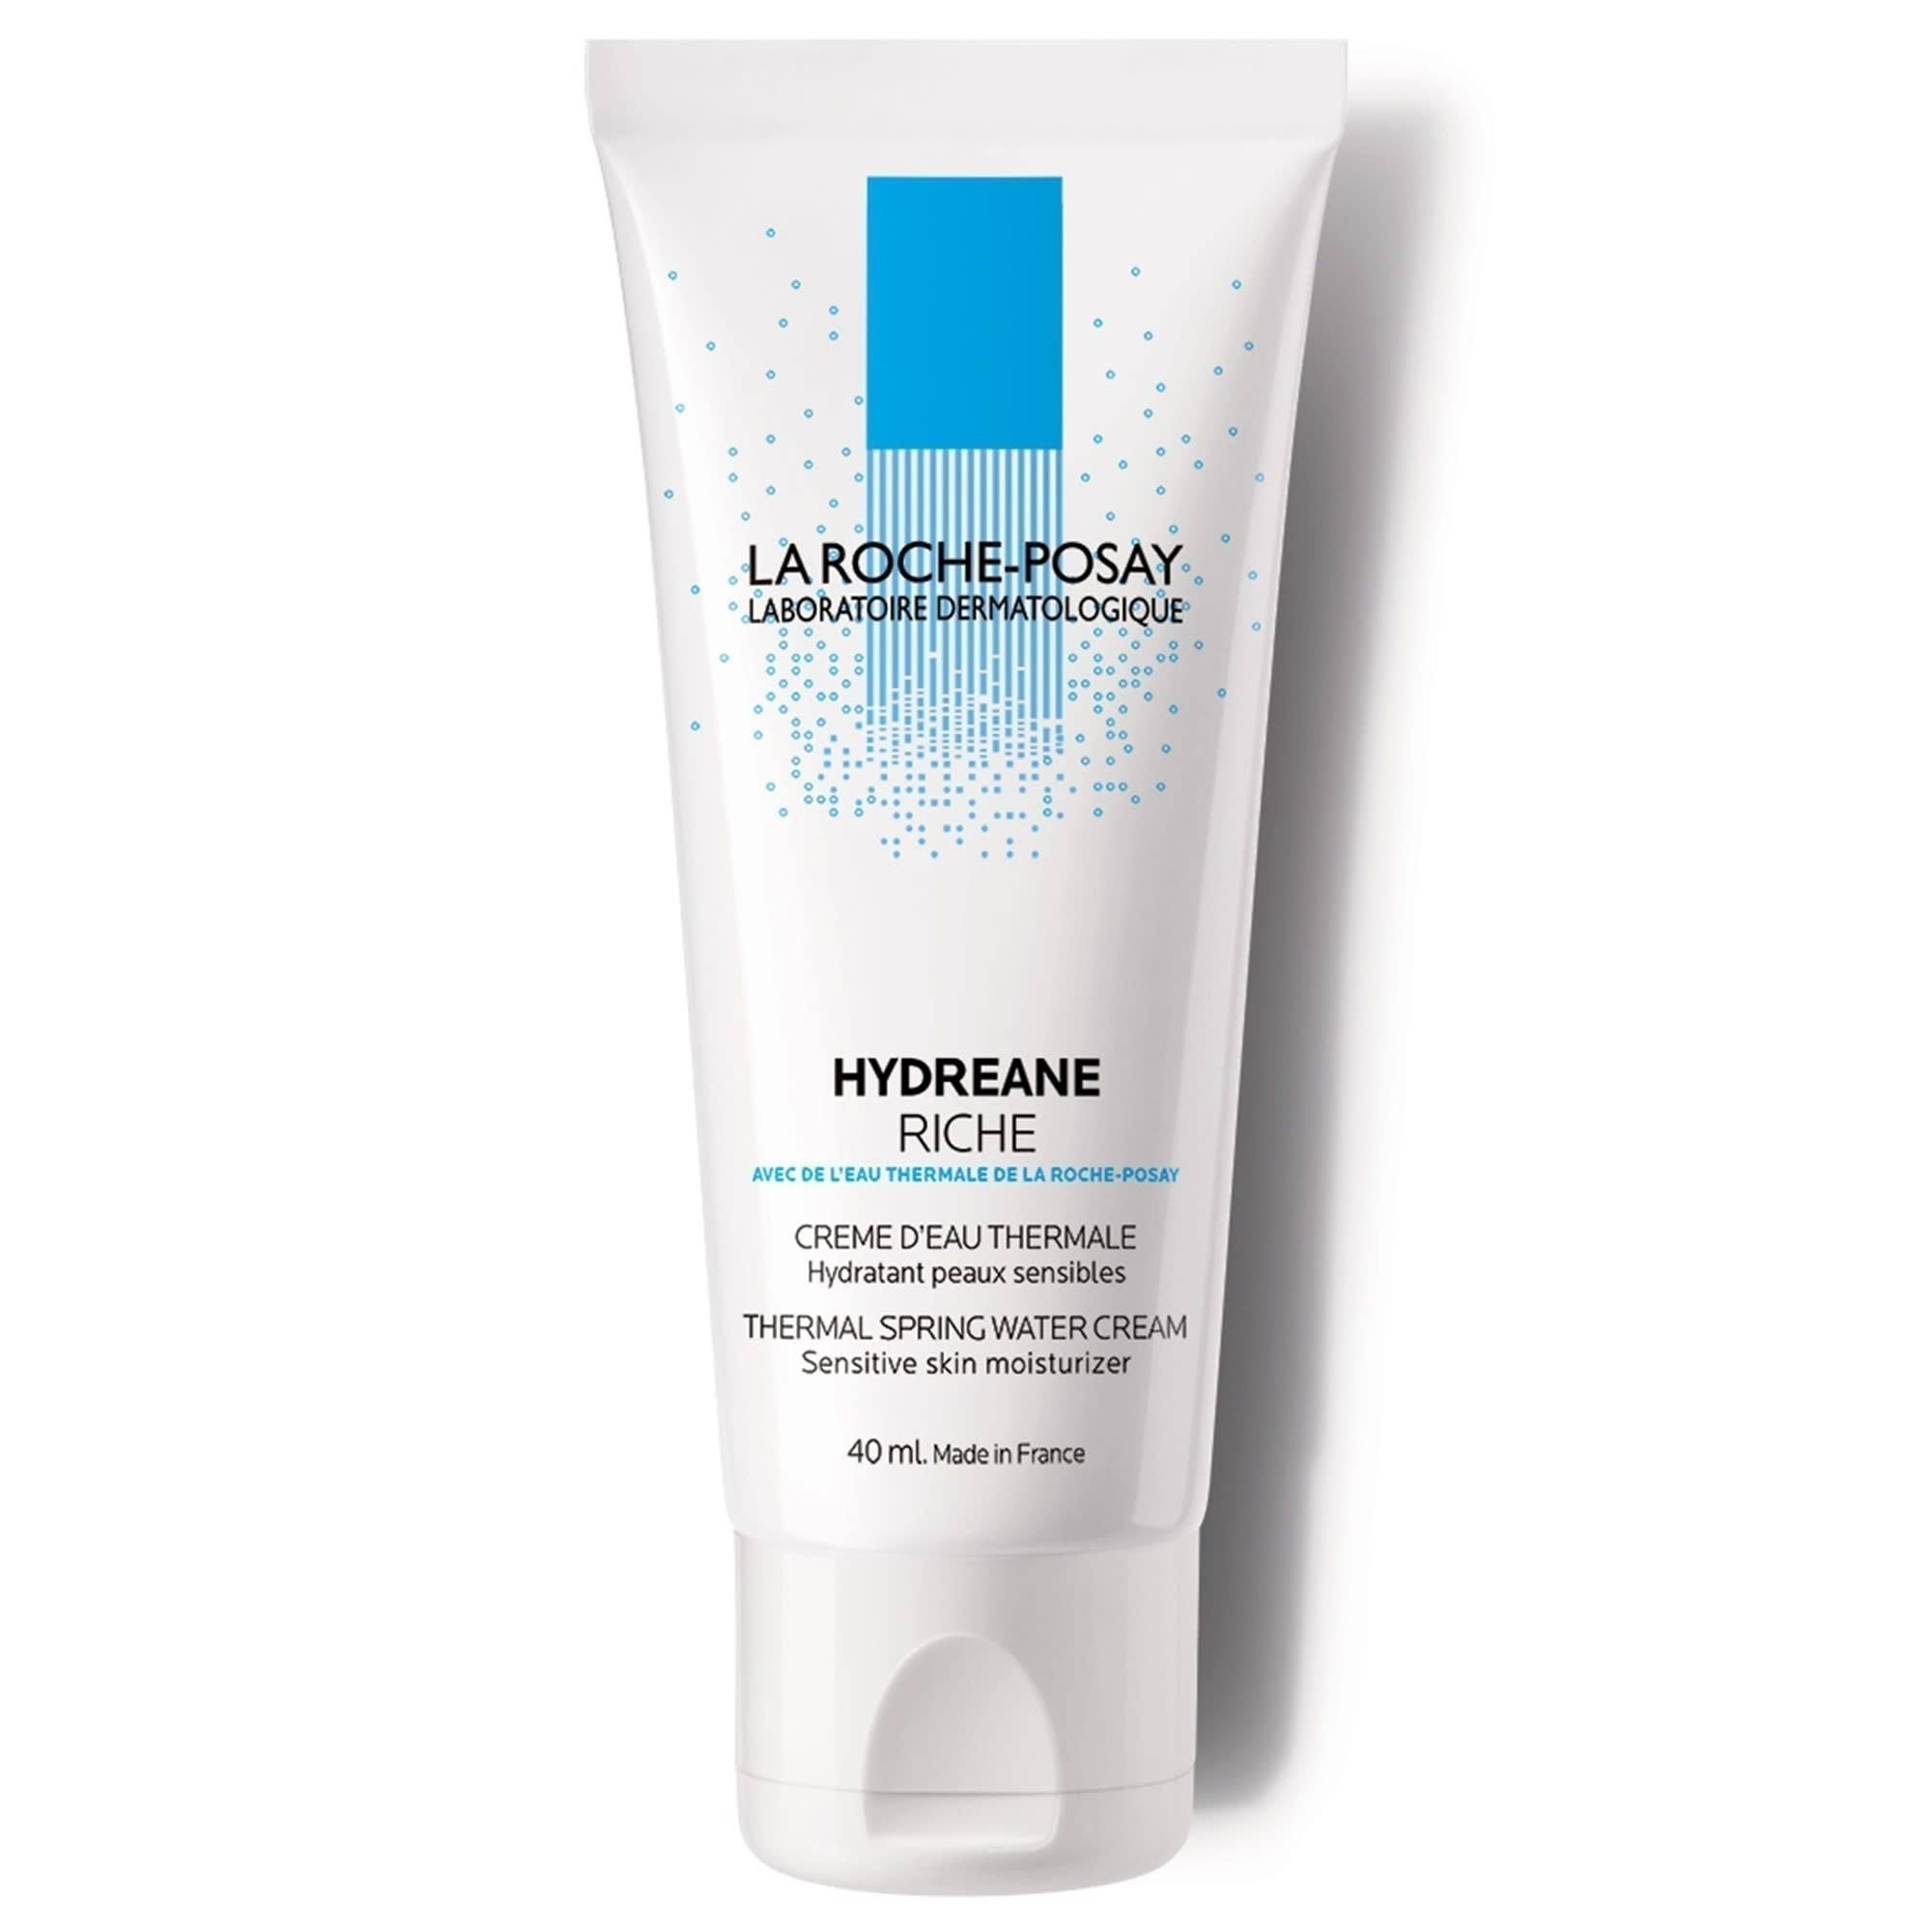 La Roche-Posay Hydreane Riche Thermal Spring Water Cream - Sensitive Skin, 40ml